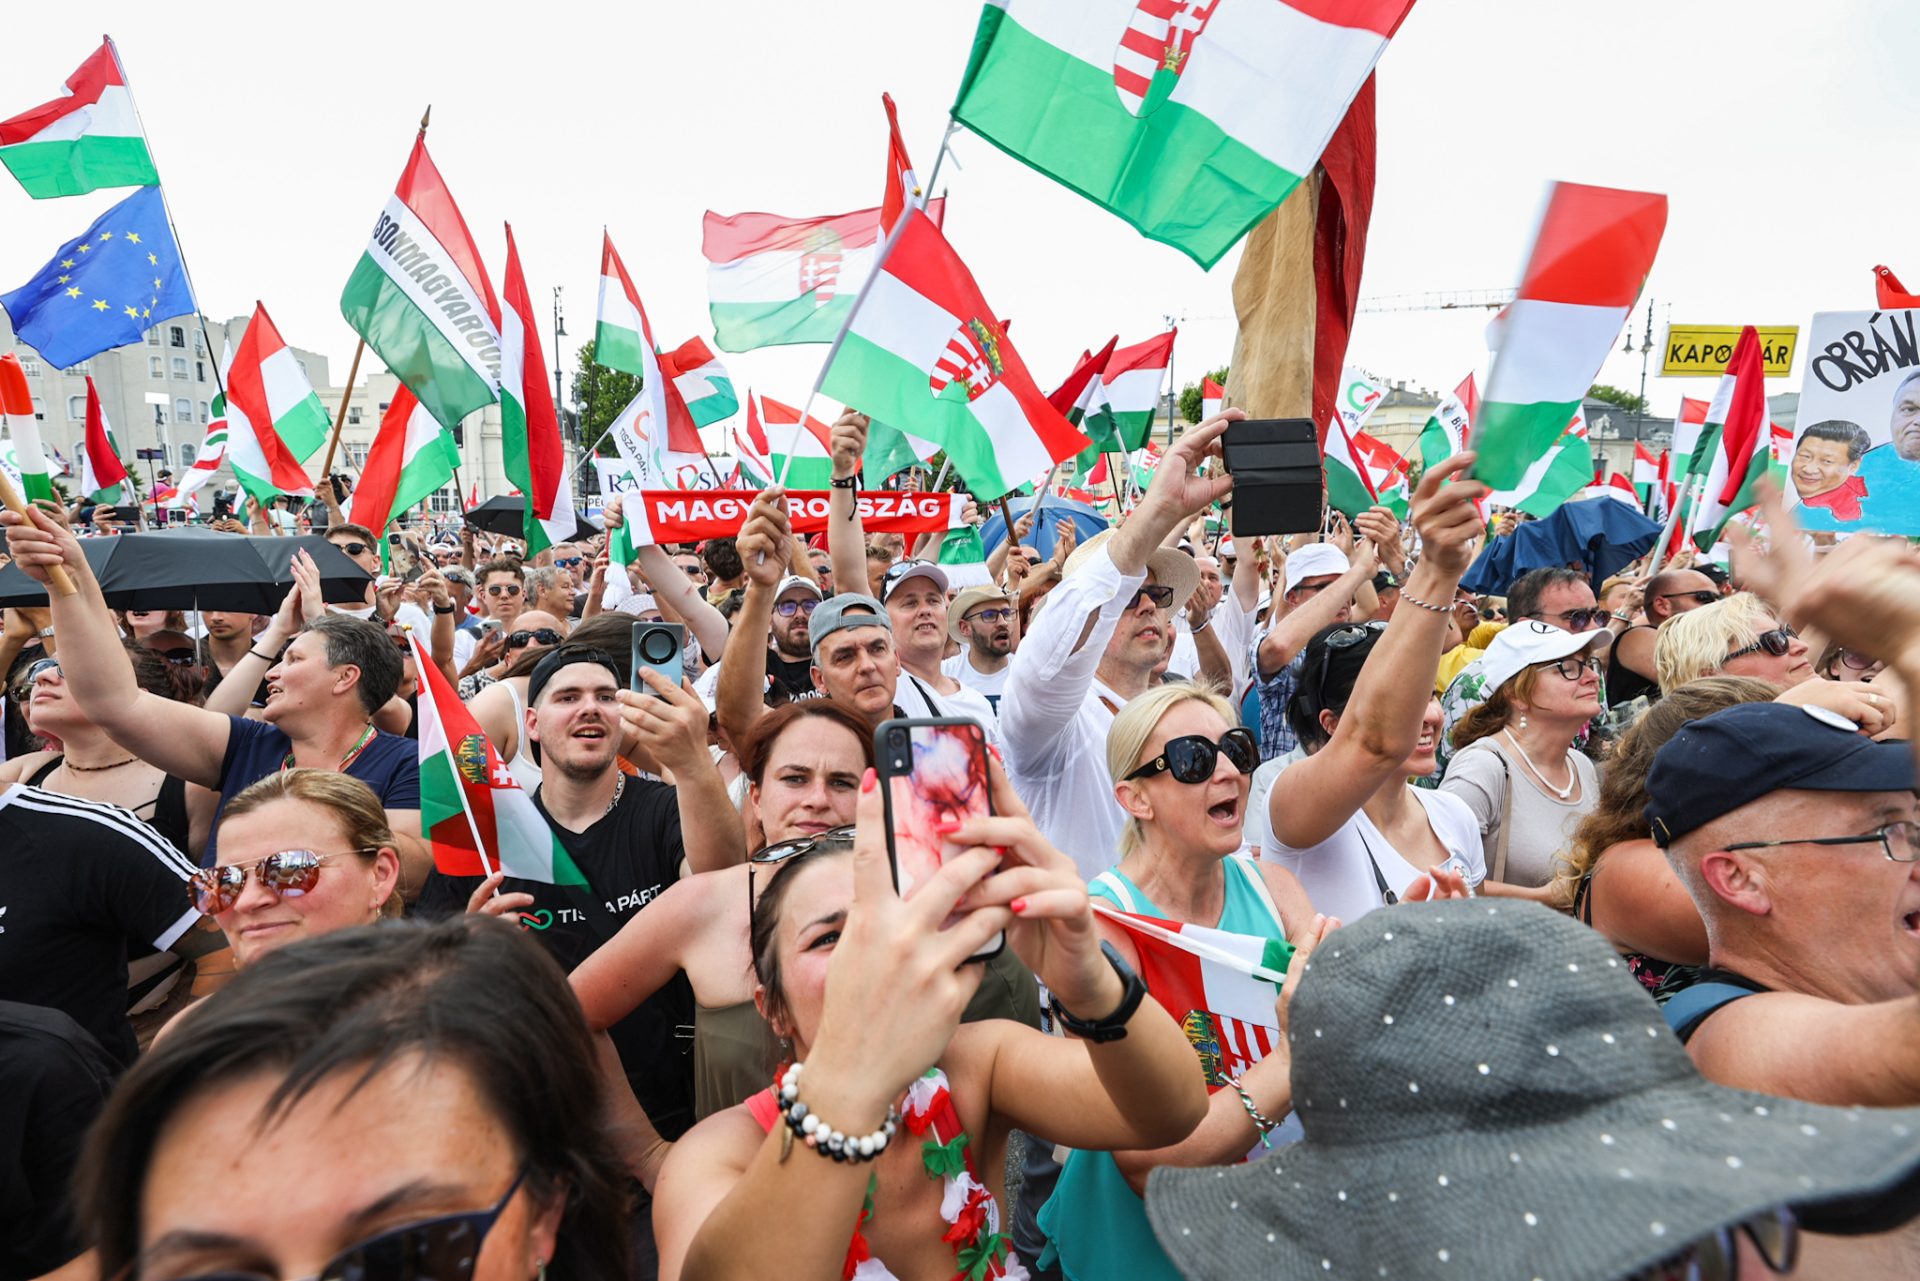 Magyar Péter radikális változásokat hoz: minimálnyugdíj és euró bevezetése a Tisza Párt ajánlatában